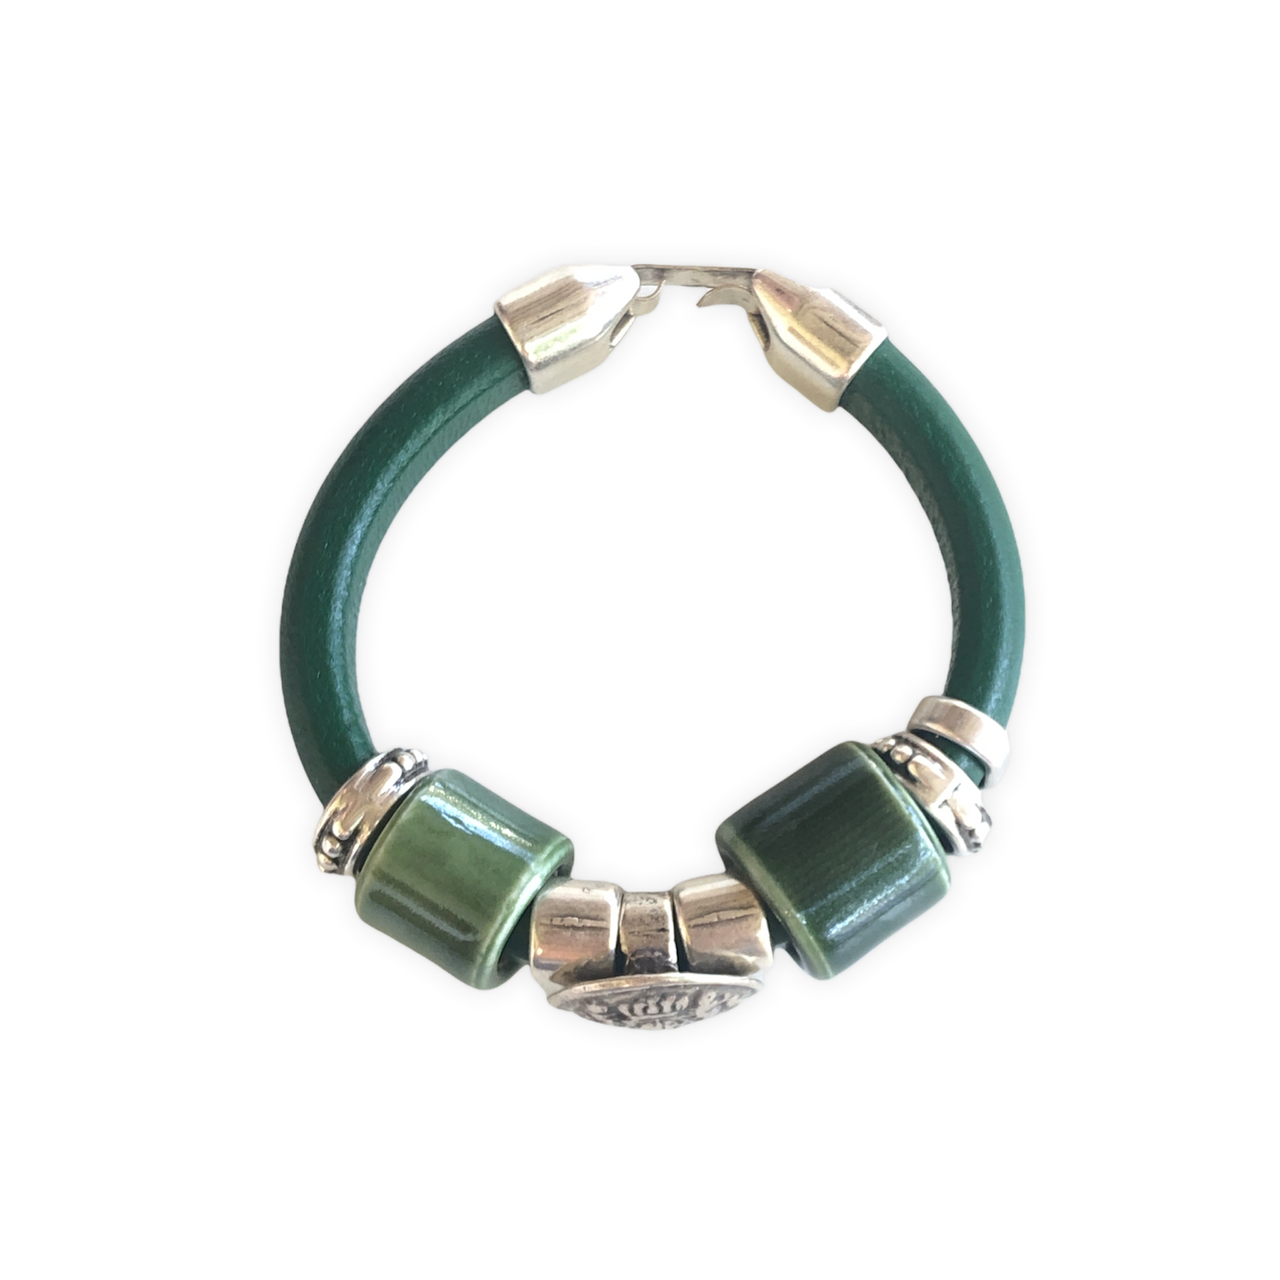 Elegante pulsera de cuero regaliz, con cuentas de Zamak con baño de plata y una espectacular cuenta de cerámica verde. Combínala con tus prendas de diario.